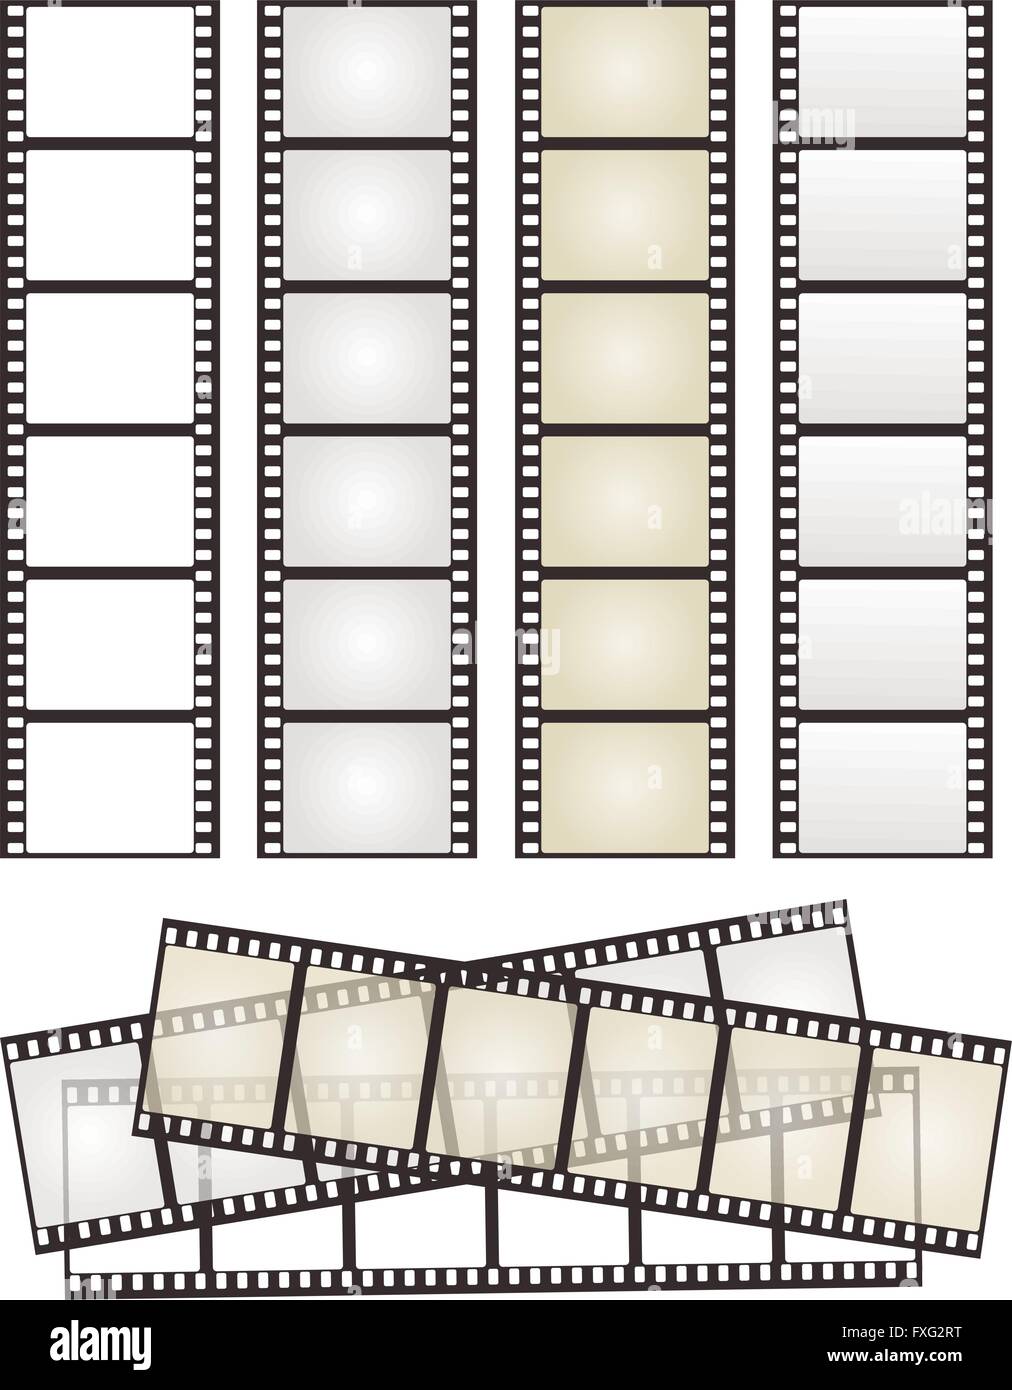 Satz von Filmstreifen mit Variation auf weiß für Ihr Design. Vektor-illustration Stock Vektor